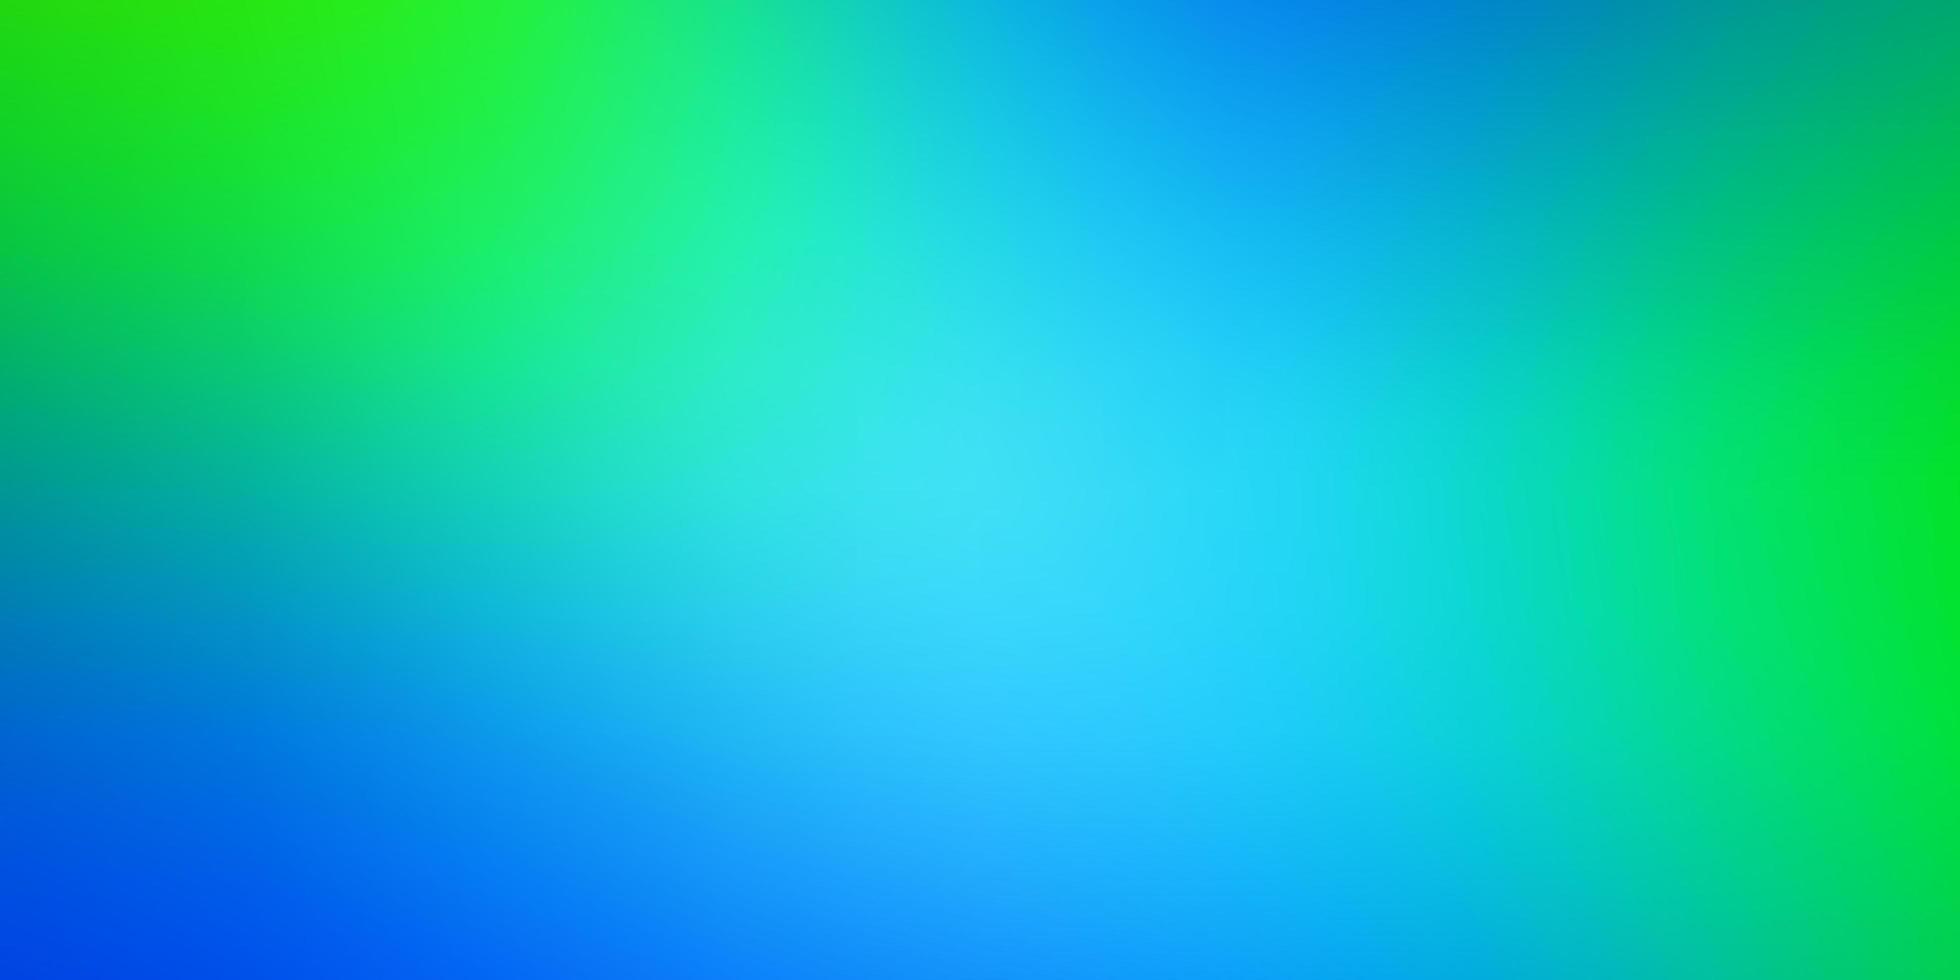 Light Blue, Green vector smart blurred template.